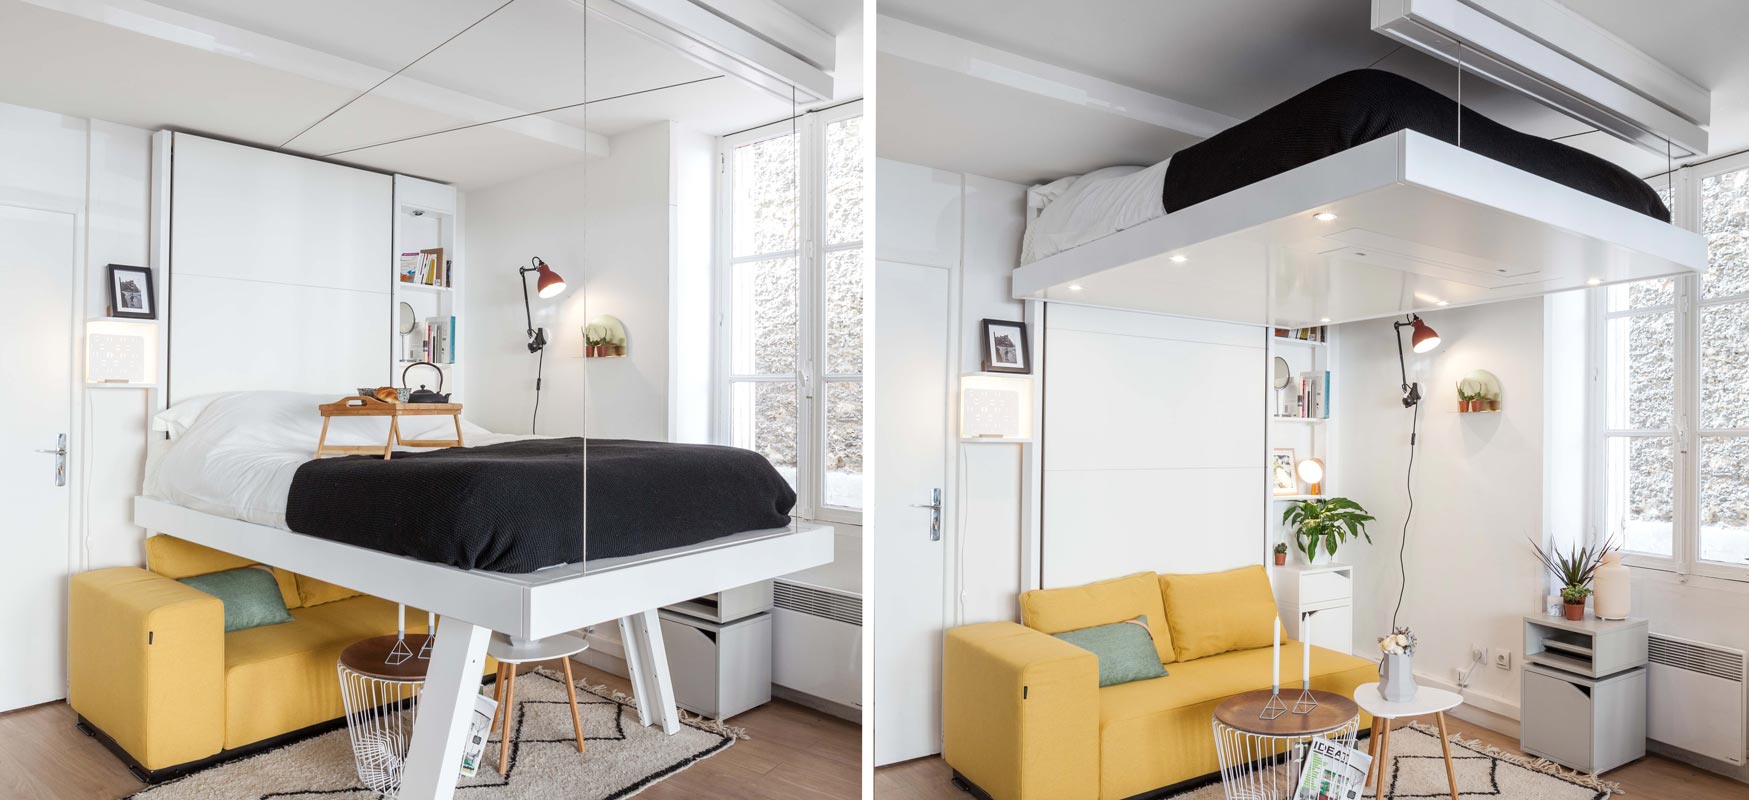 lit-escamotable-plafond-bedup-vision